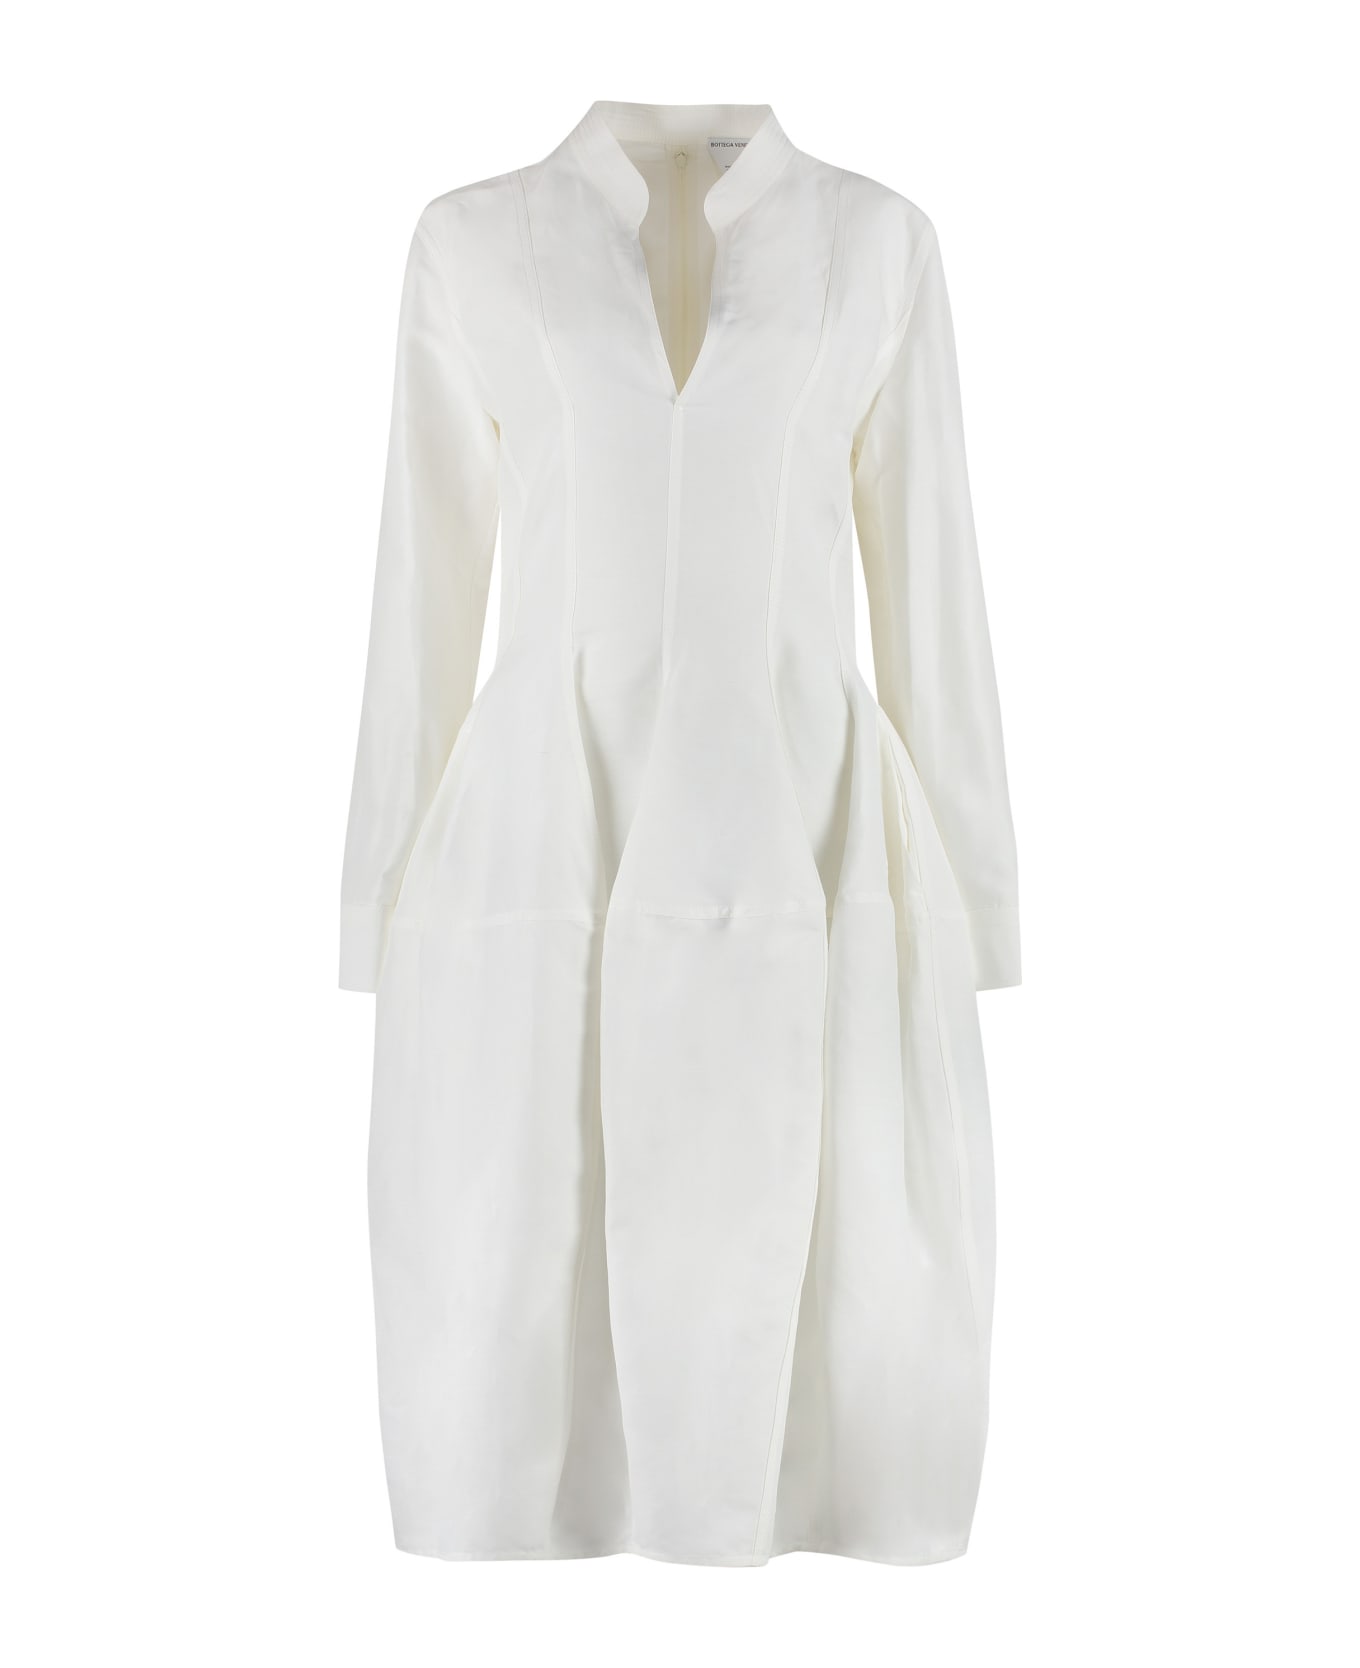 Bottega Veneta Linen And Viscose Dress - White